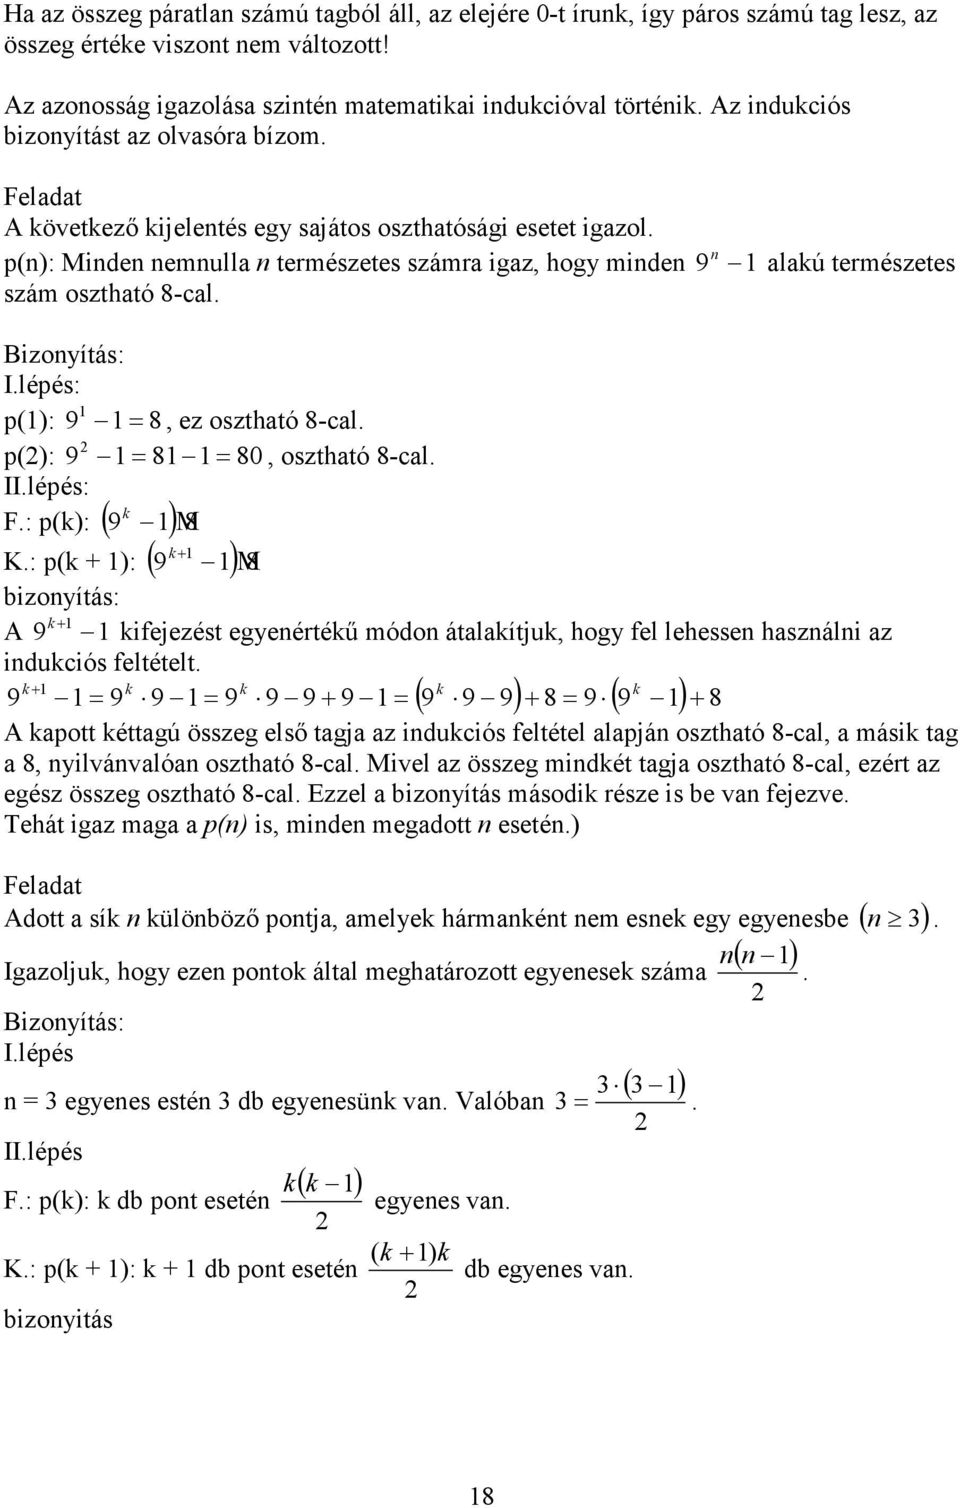 I.A matematikai logika alapjai. I.1. A kijelentés. A predikátum - PDF  Ingyenes letöltés